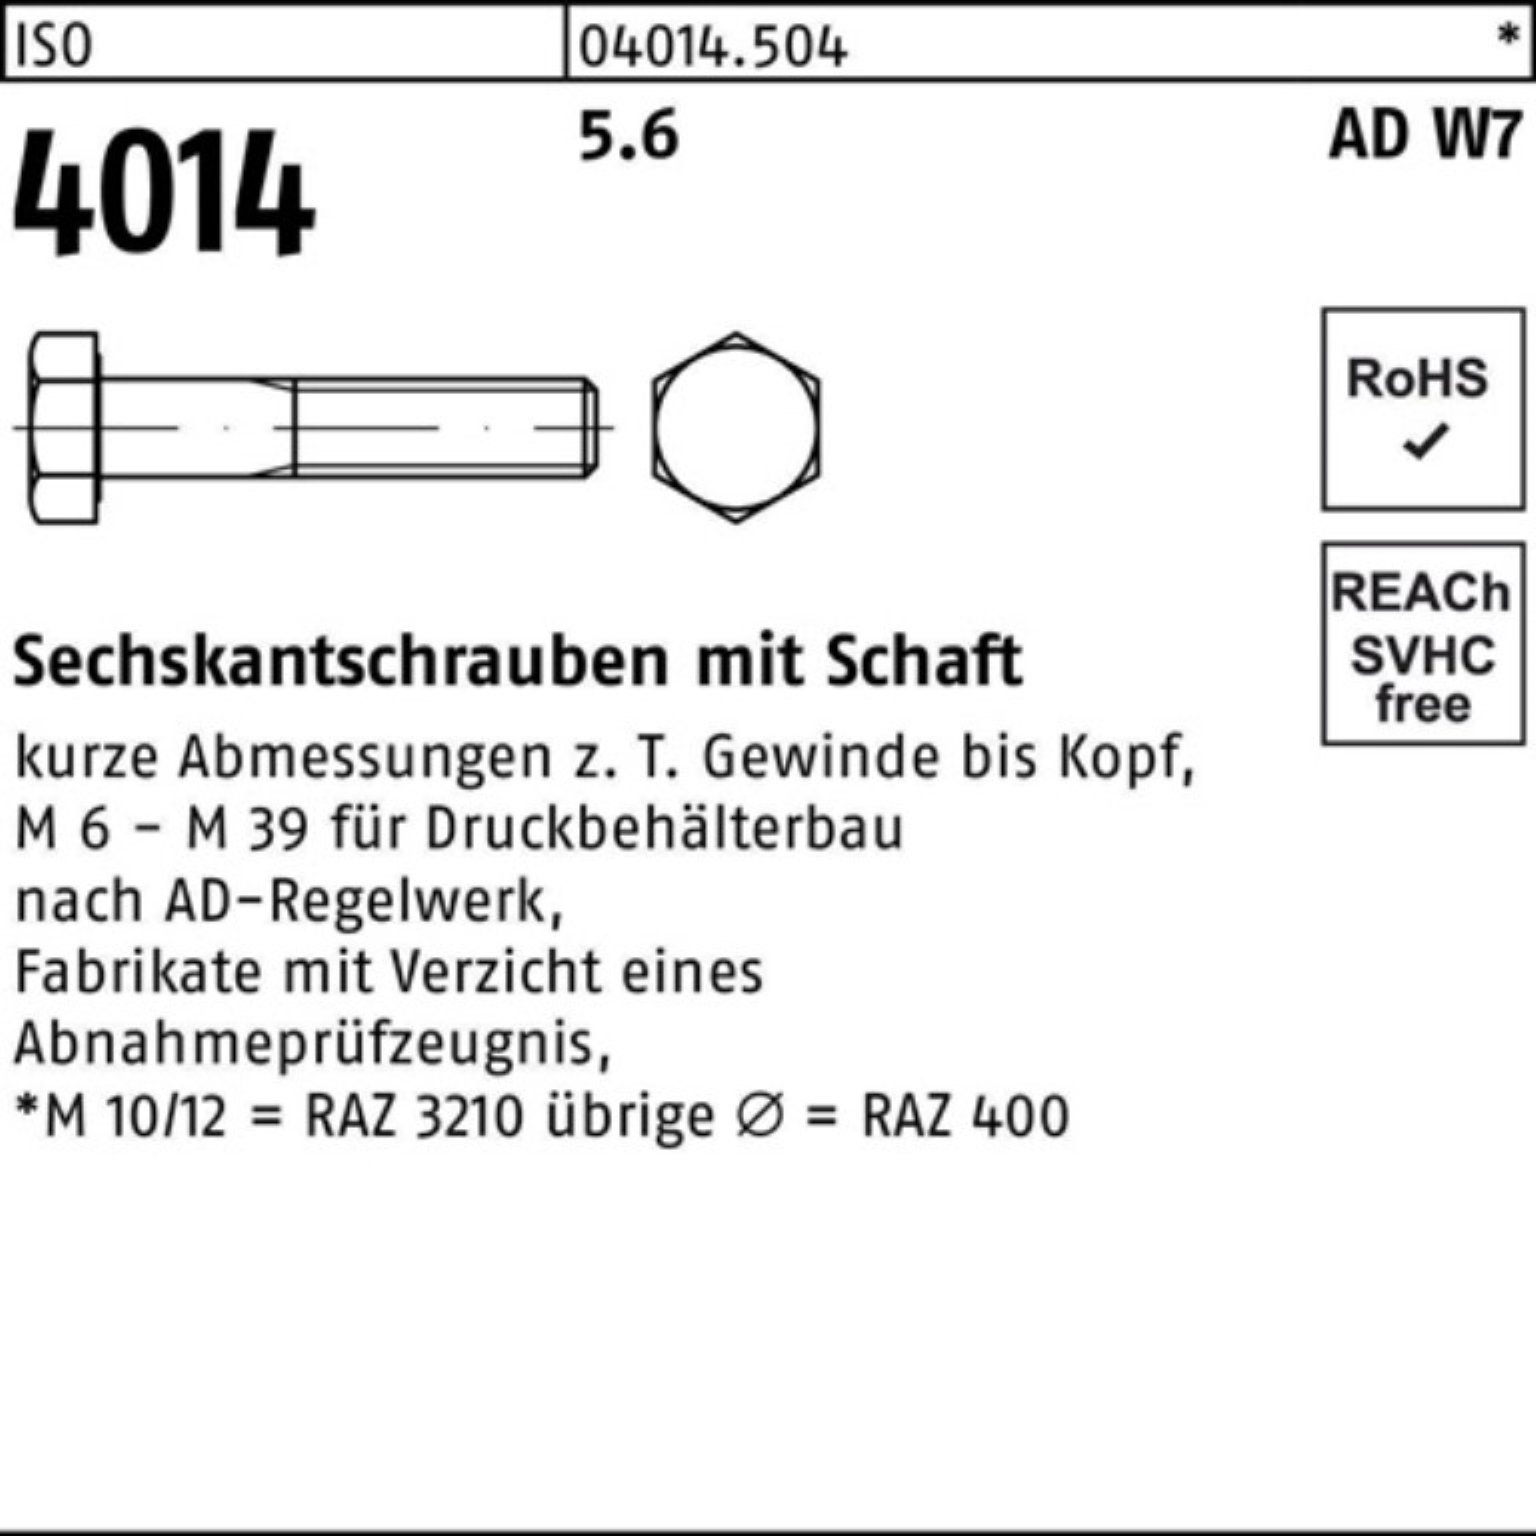 M33x Sechskantschraube Pack Stück 1 4014 ISO 200 100er 5.6 Schaft Sechskantschraube Bufab W7